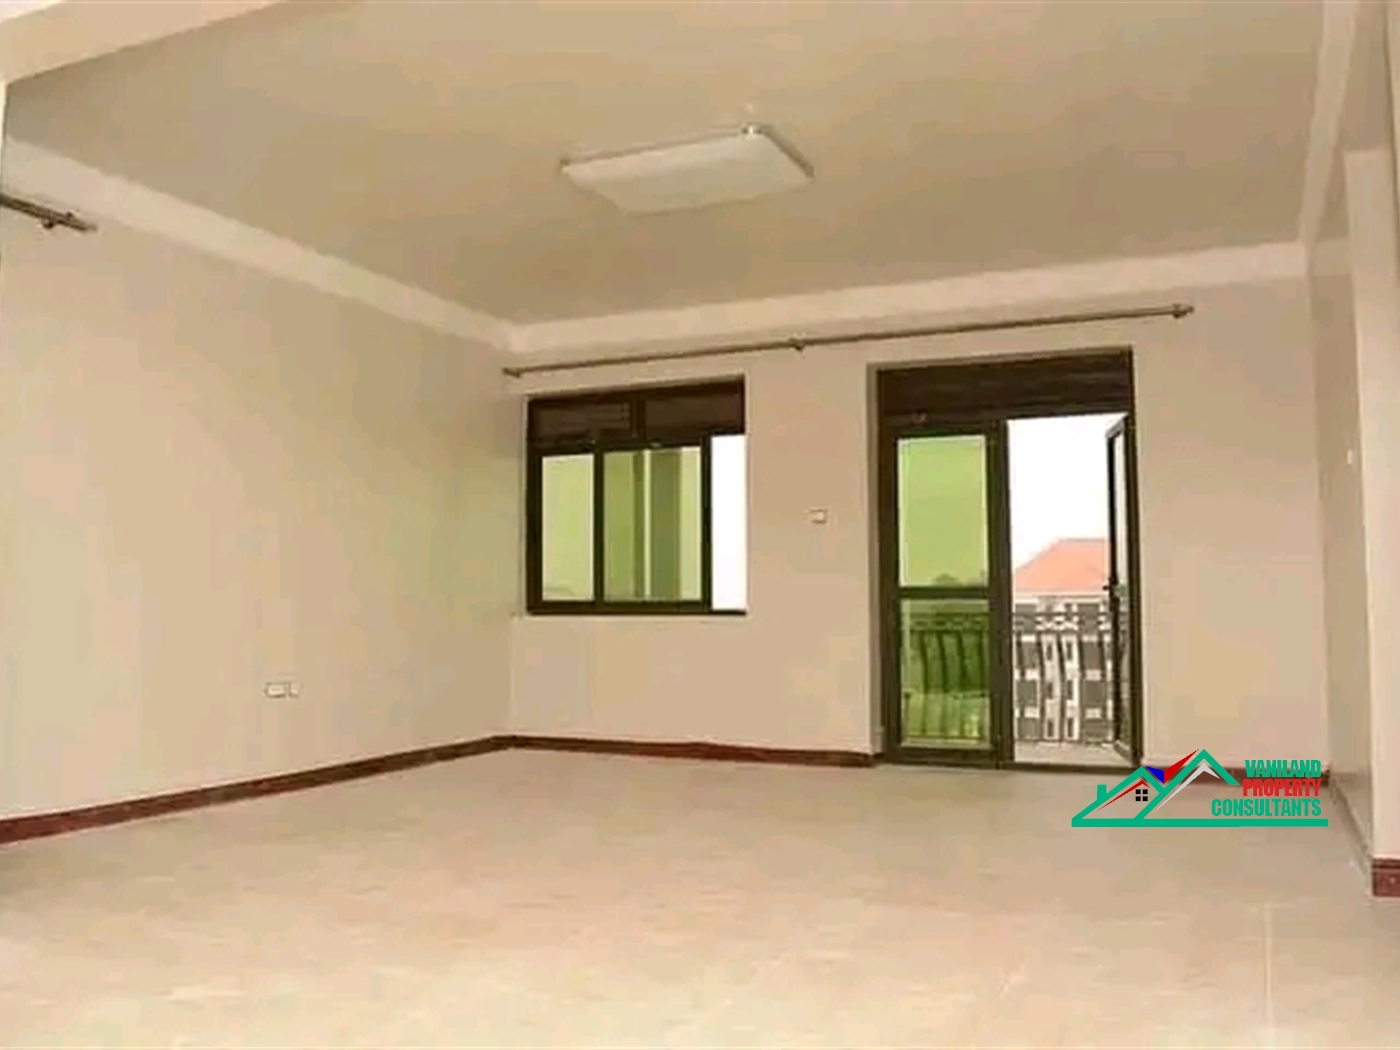 Apartment for rent in Kiwantule Kampala